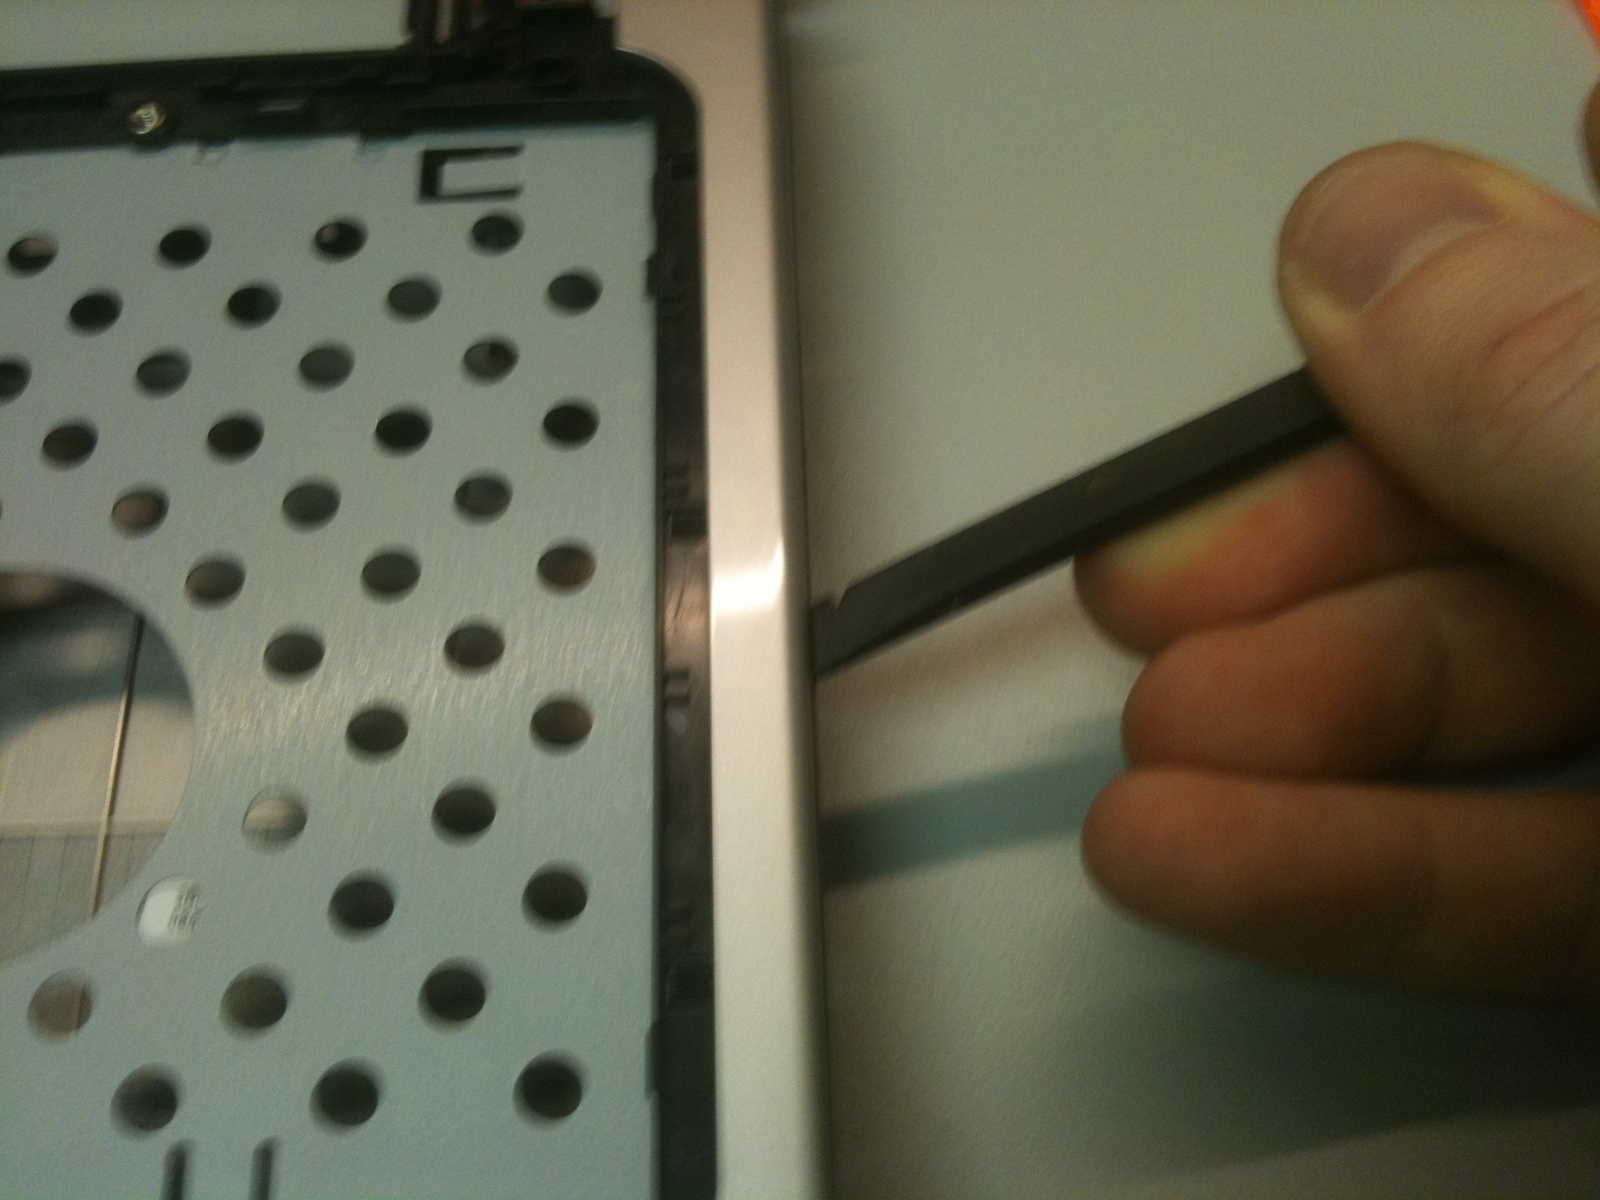 Stap 13 Verwijder de zwarte stof tape uit het midden van het toetsenbord lade om de draadloze antenne draden we eerder zagen onthullen. Stel deze tape opzij.